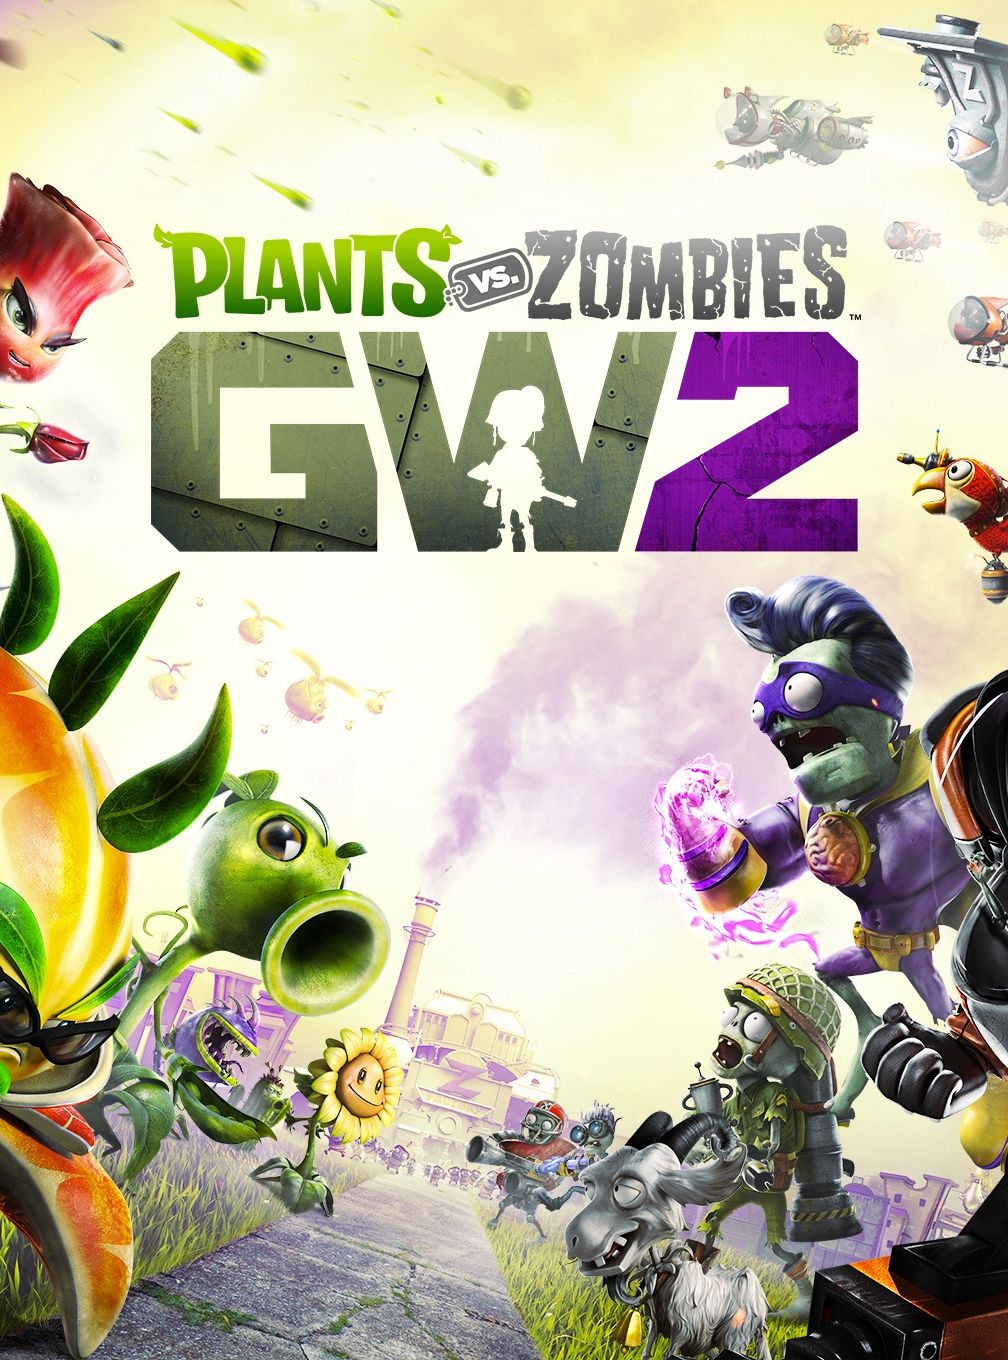 plants zombies garden warfare 2